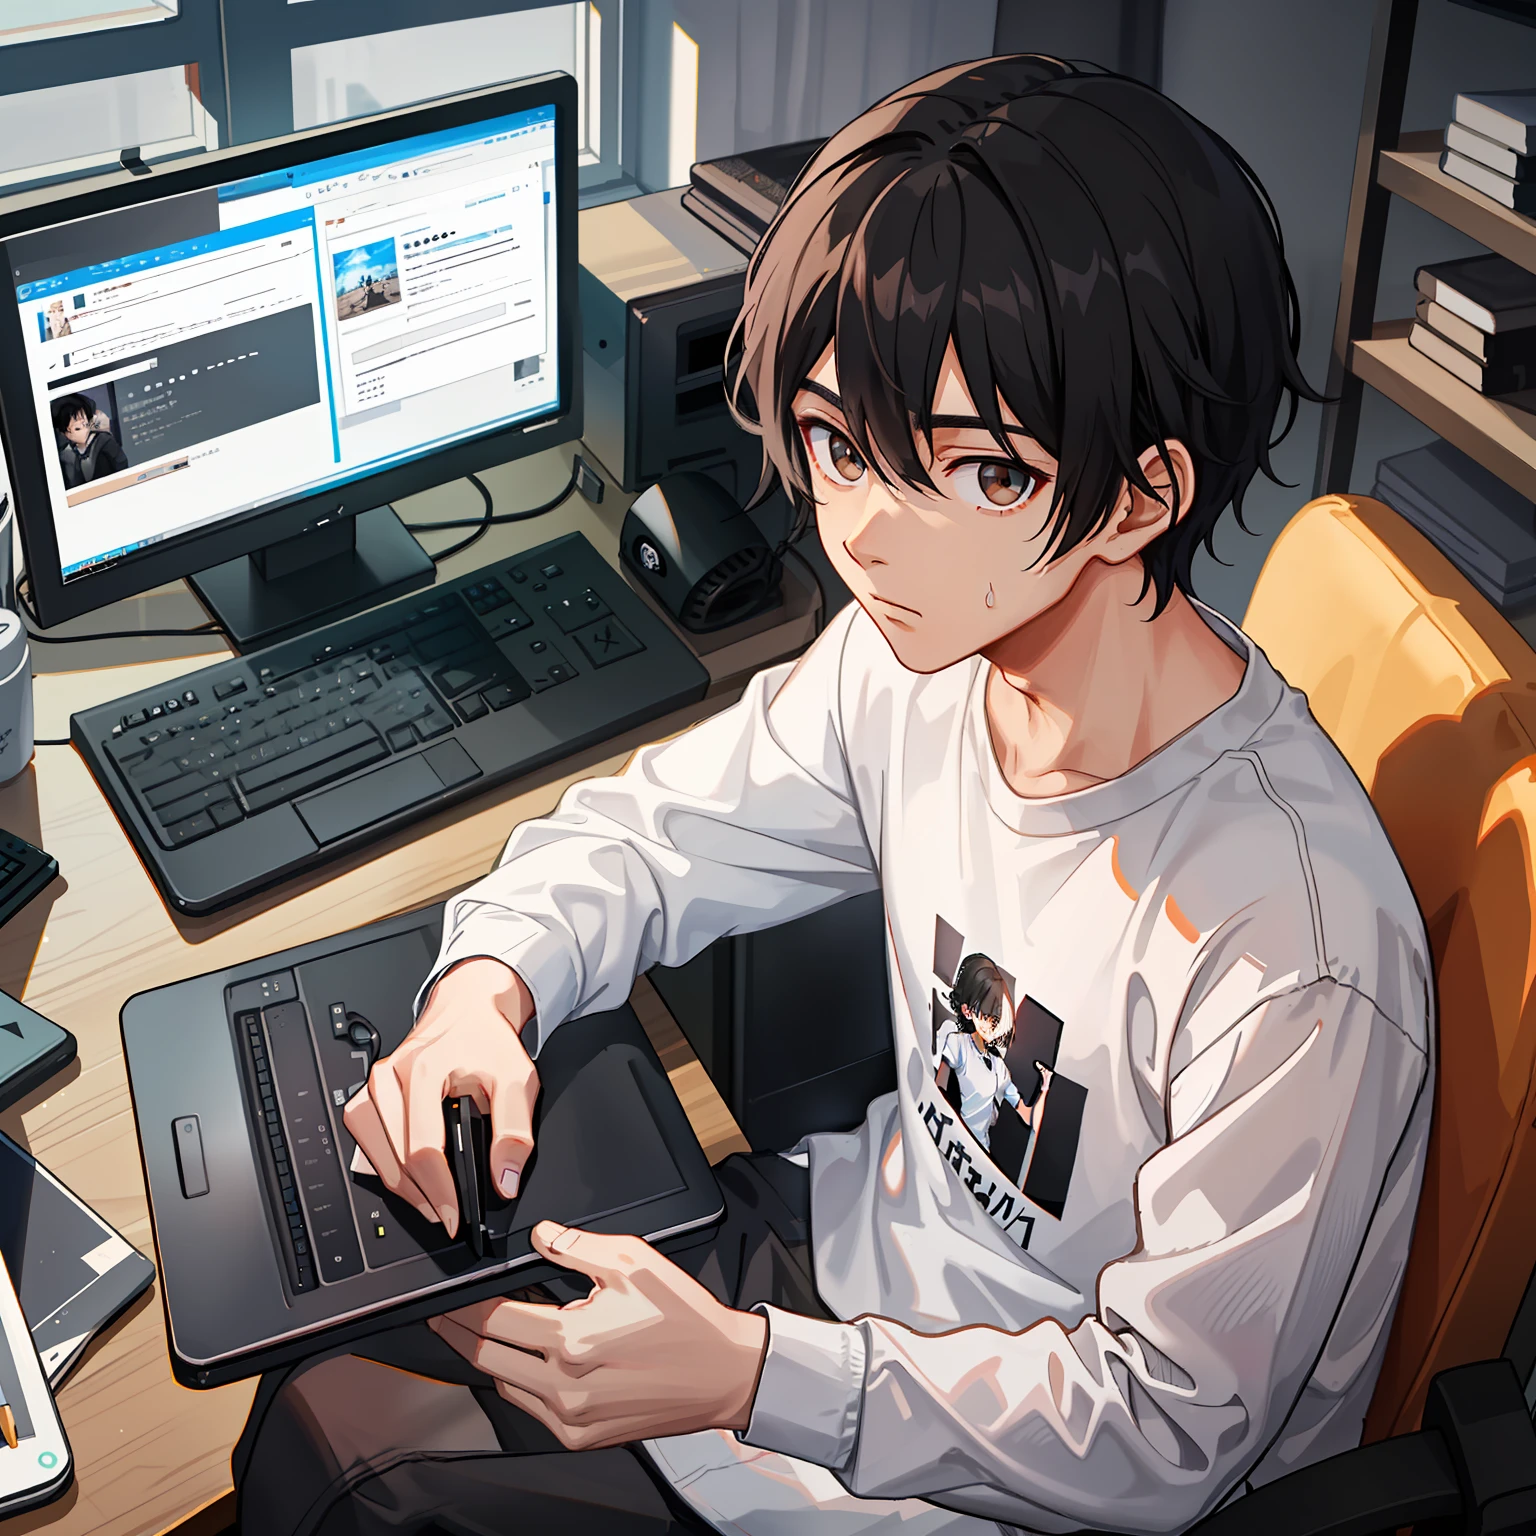 "黑色波浪短髮男生，穿白襯衫和黑色運動褲，坐在電腦前，深棕色眼睛。